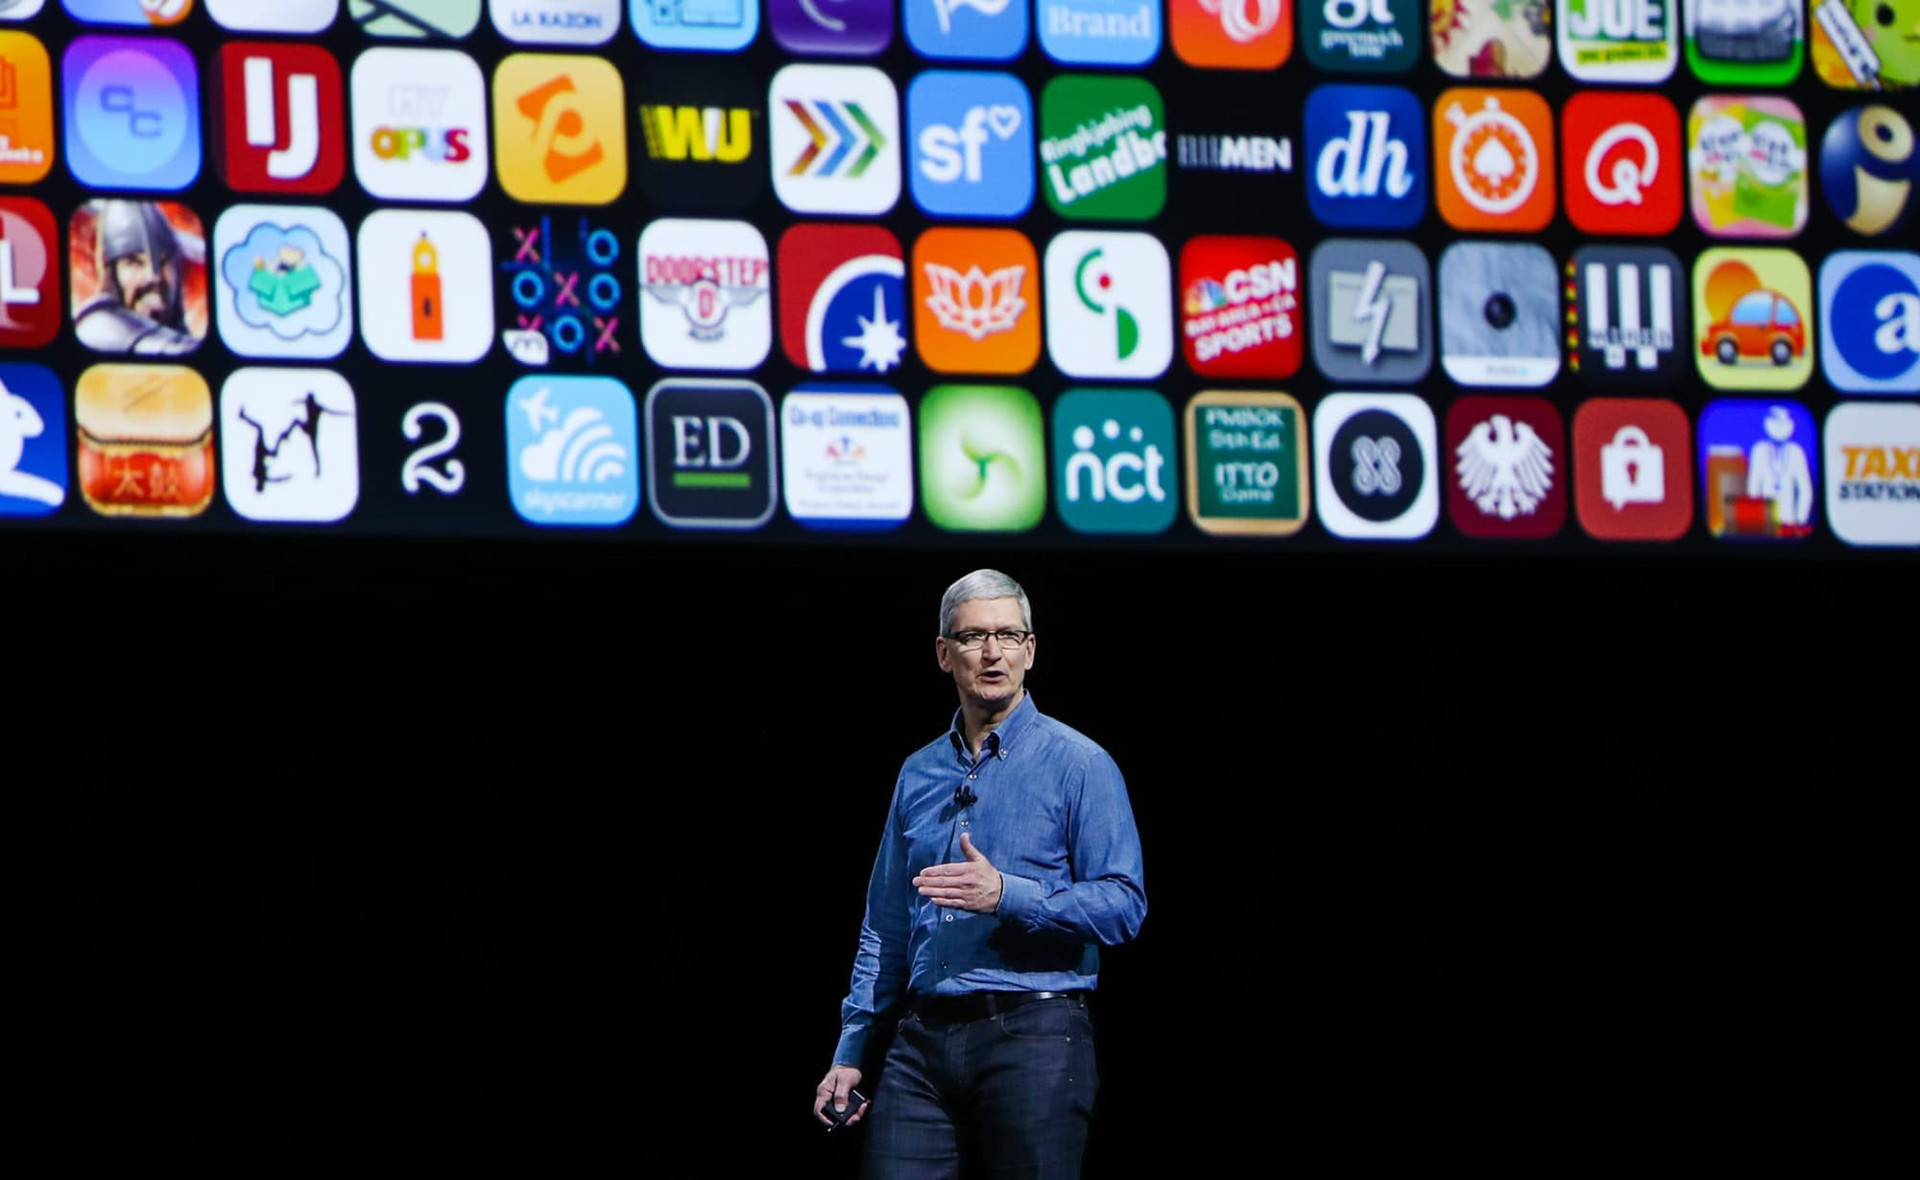 iPhone sẽ có chợ ứng dụng không phải từ Apple, chấp nhận các phần mềm từ bên ngoài - Ảnh 3.